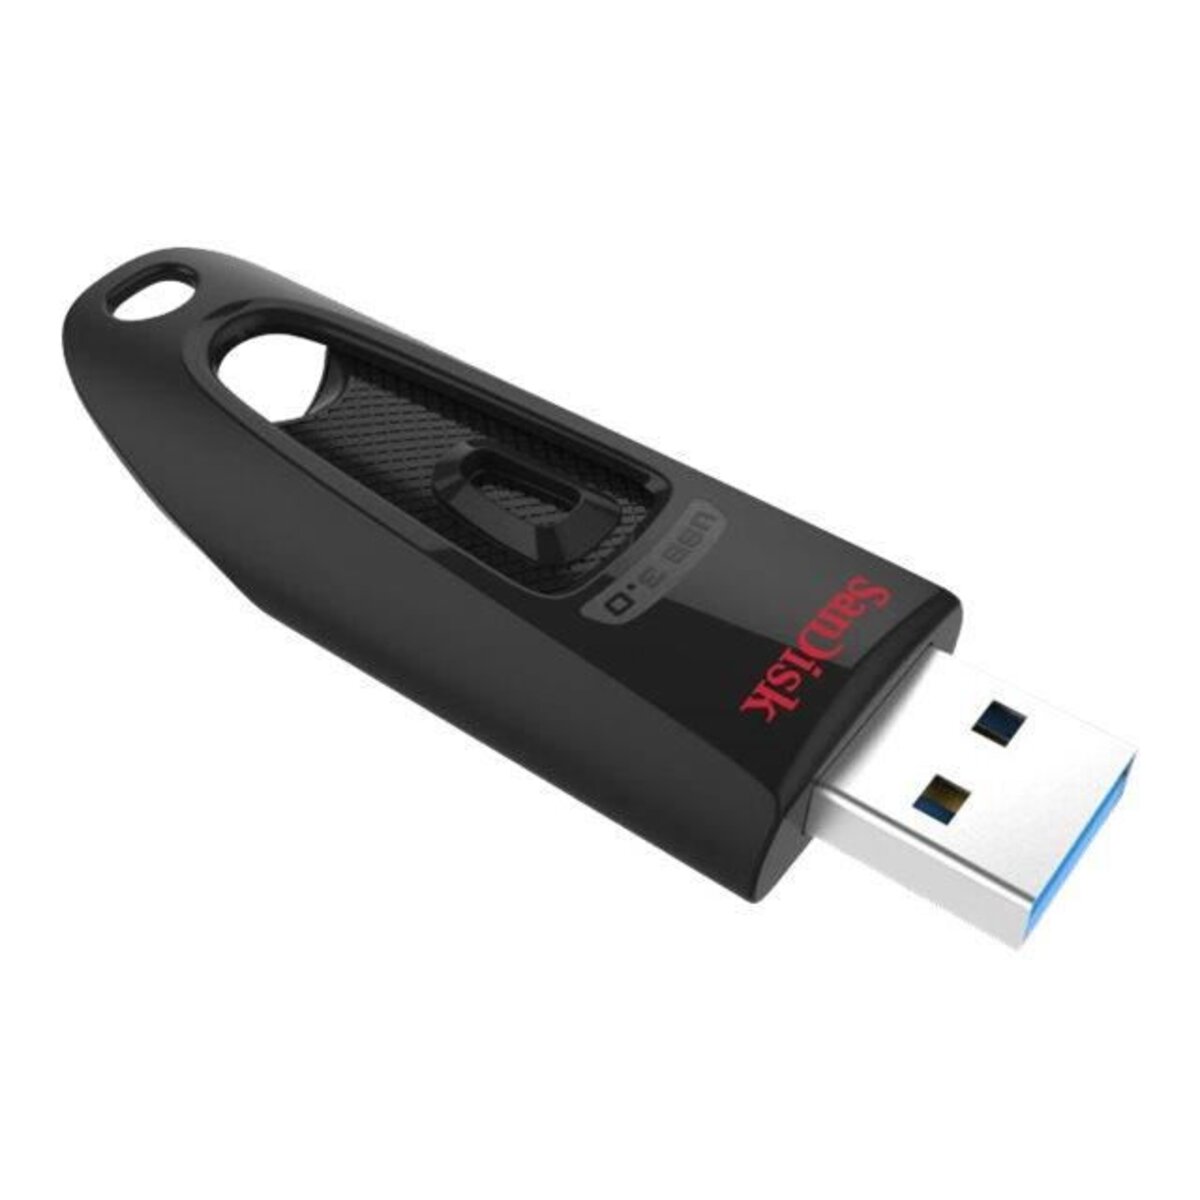 Clé USB 3.0 sécurisée à empreinte digitale - Trax Distribution